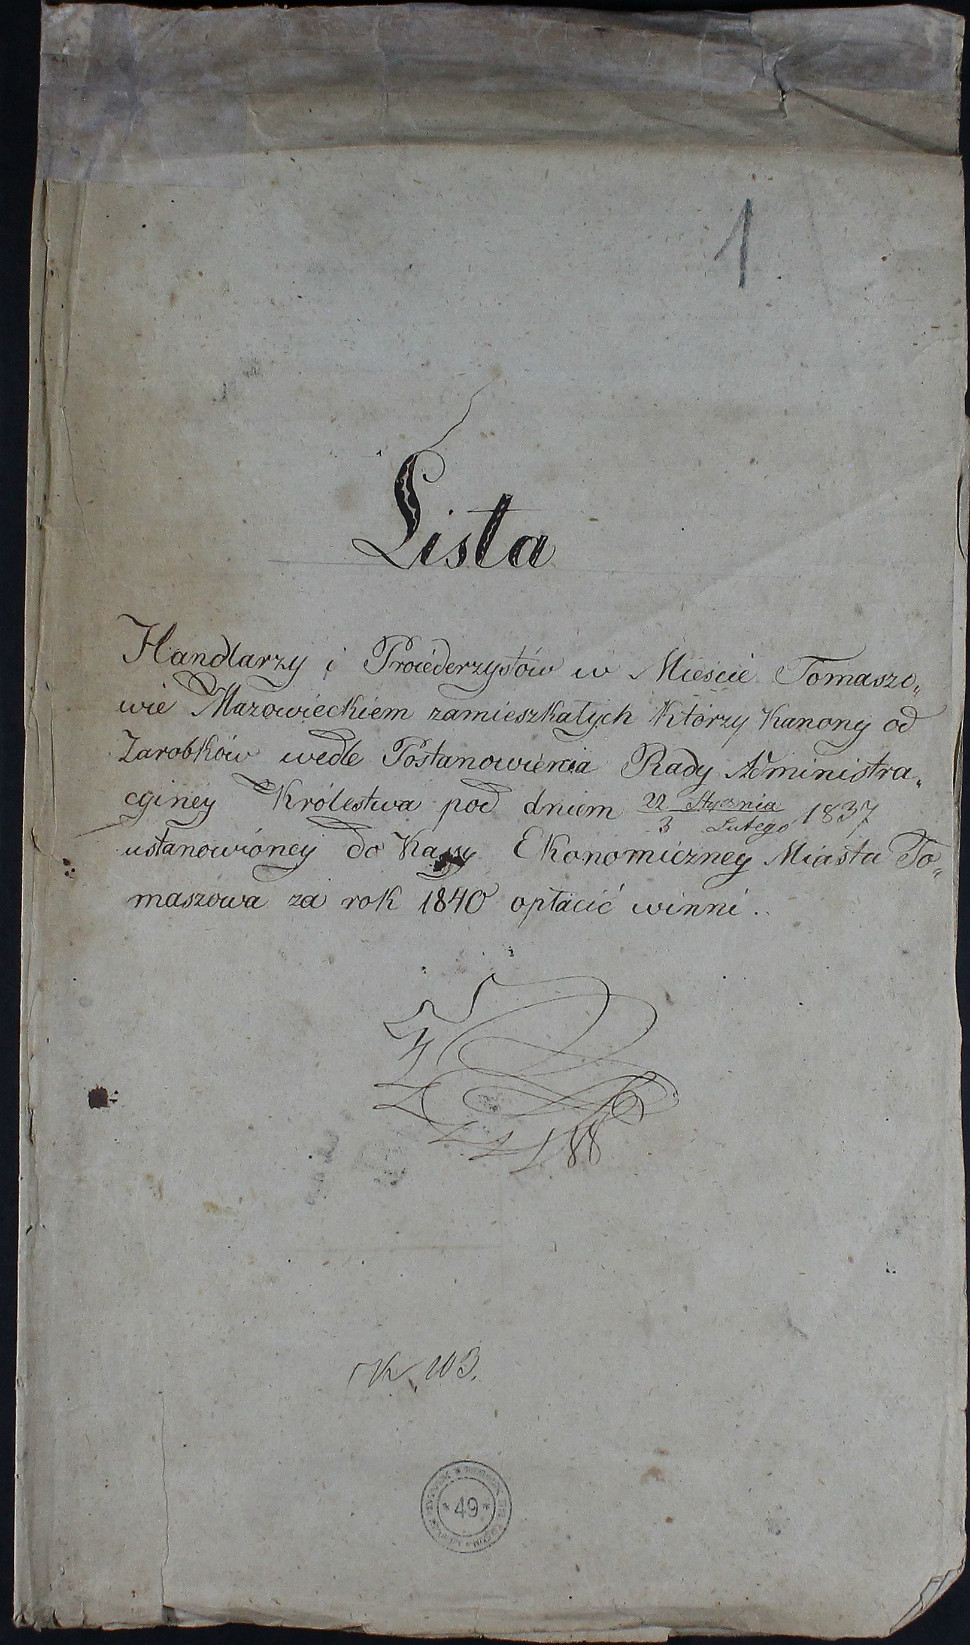 Lista handlarzy i procederzystów z 1843 r. - strona tytułowa